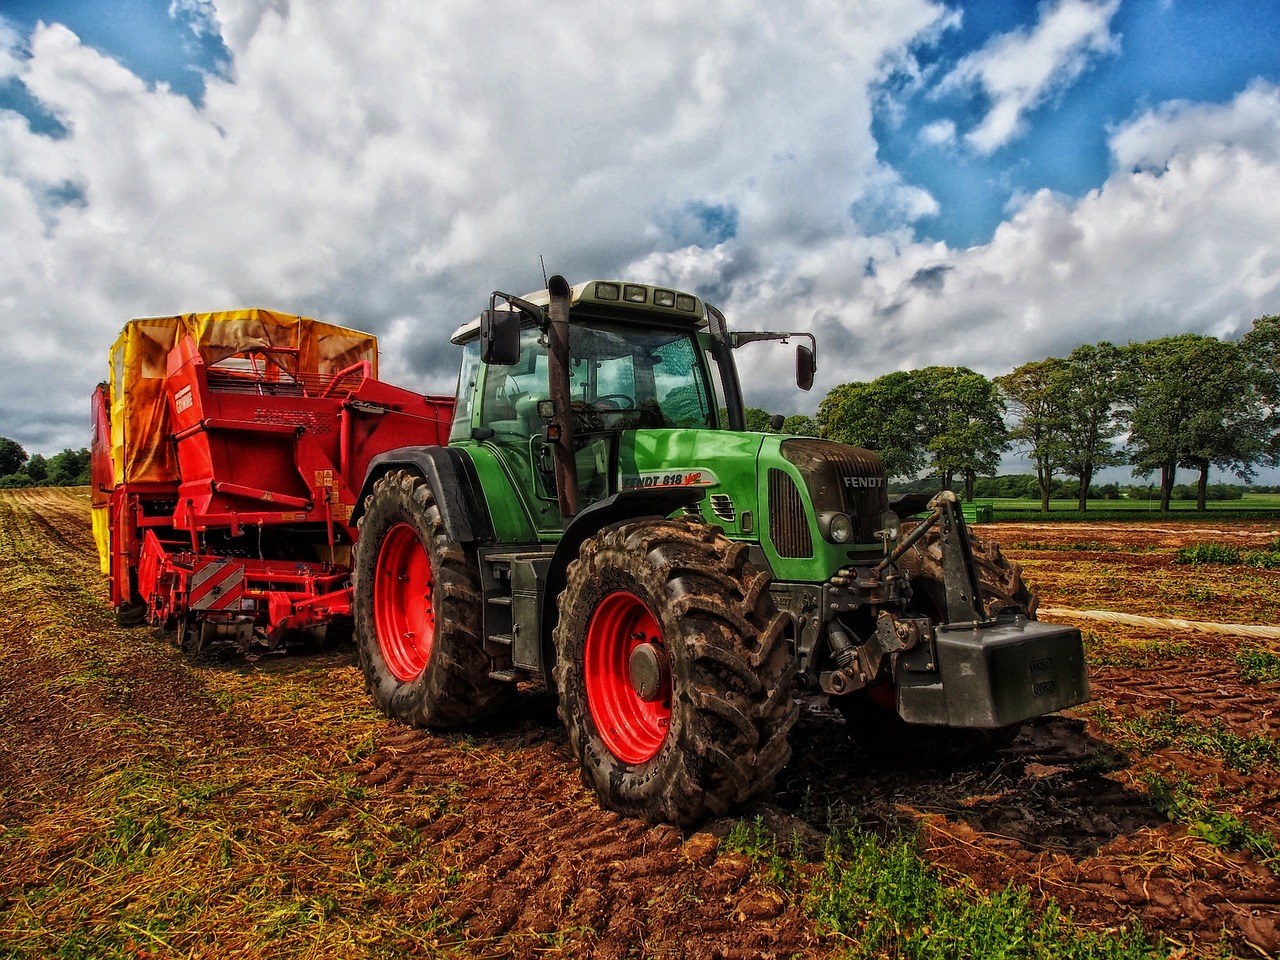 O que é preciso para conduzir um trator agrícola?